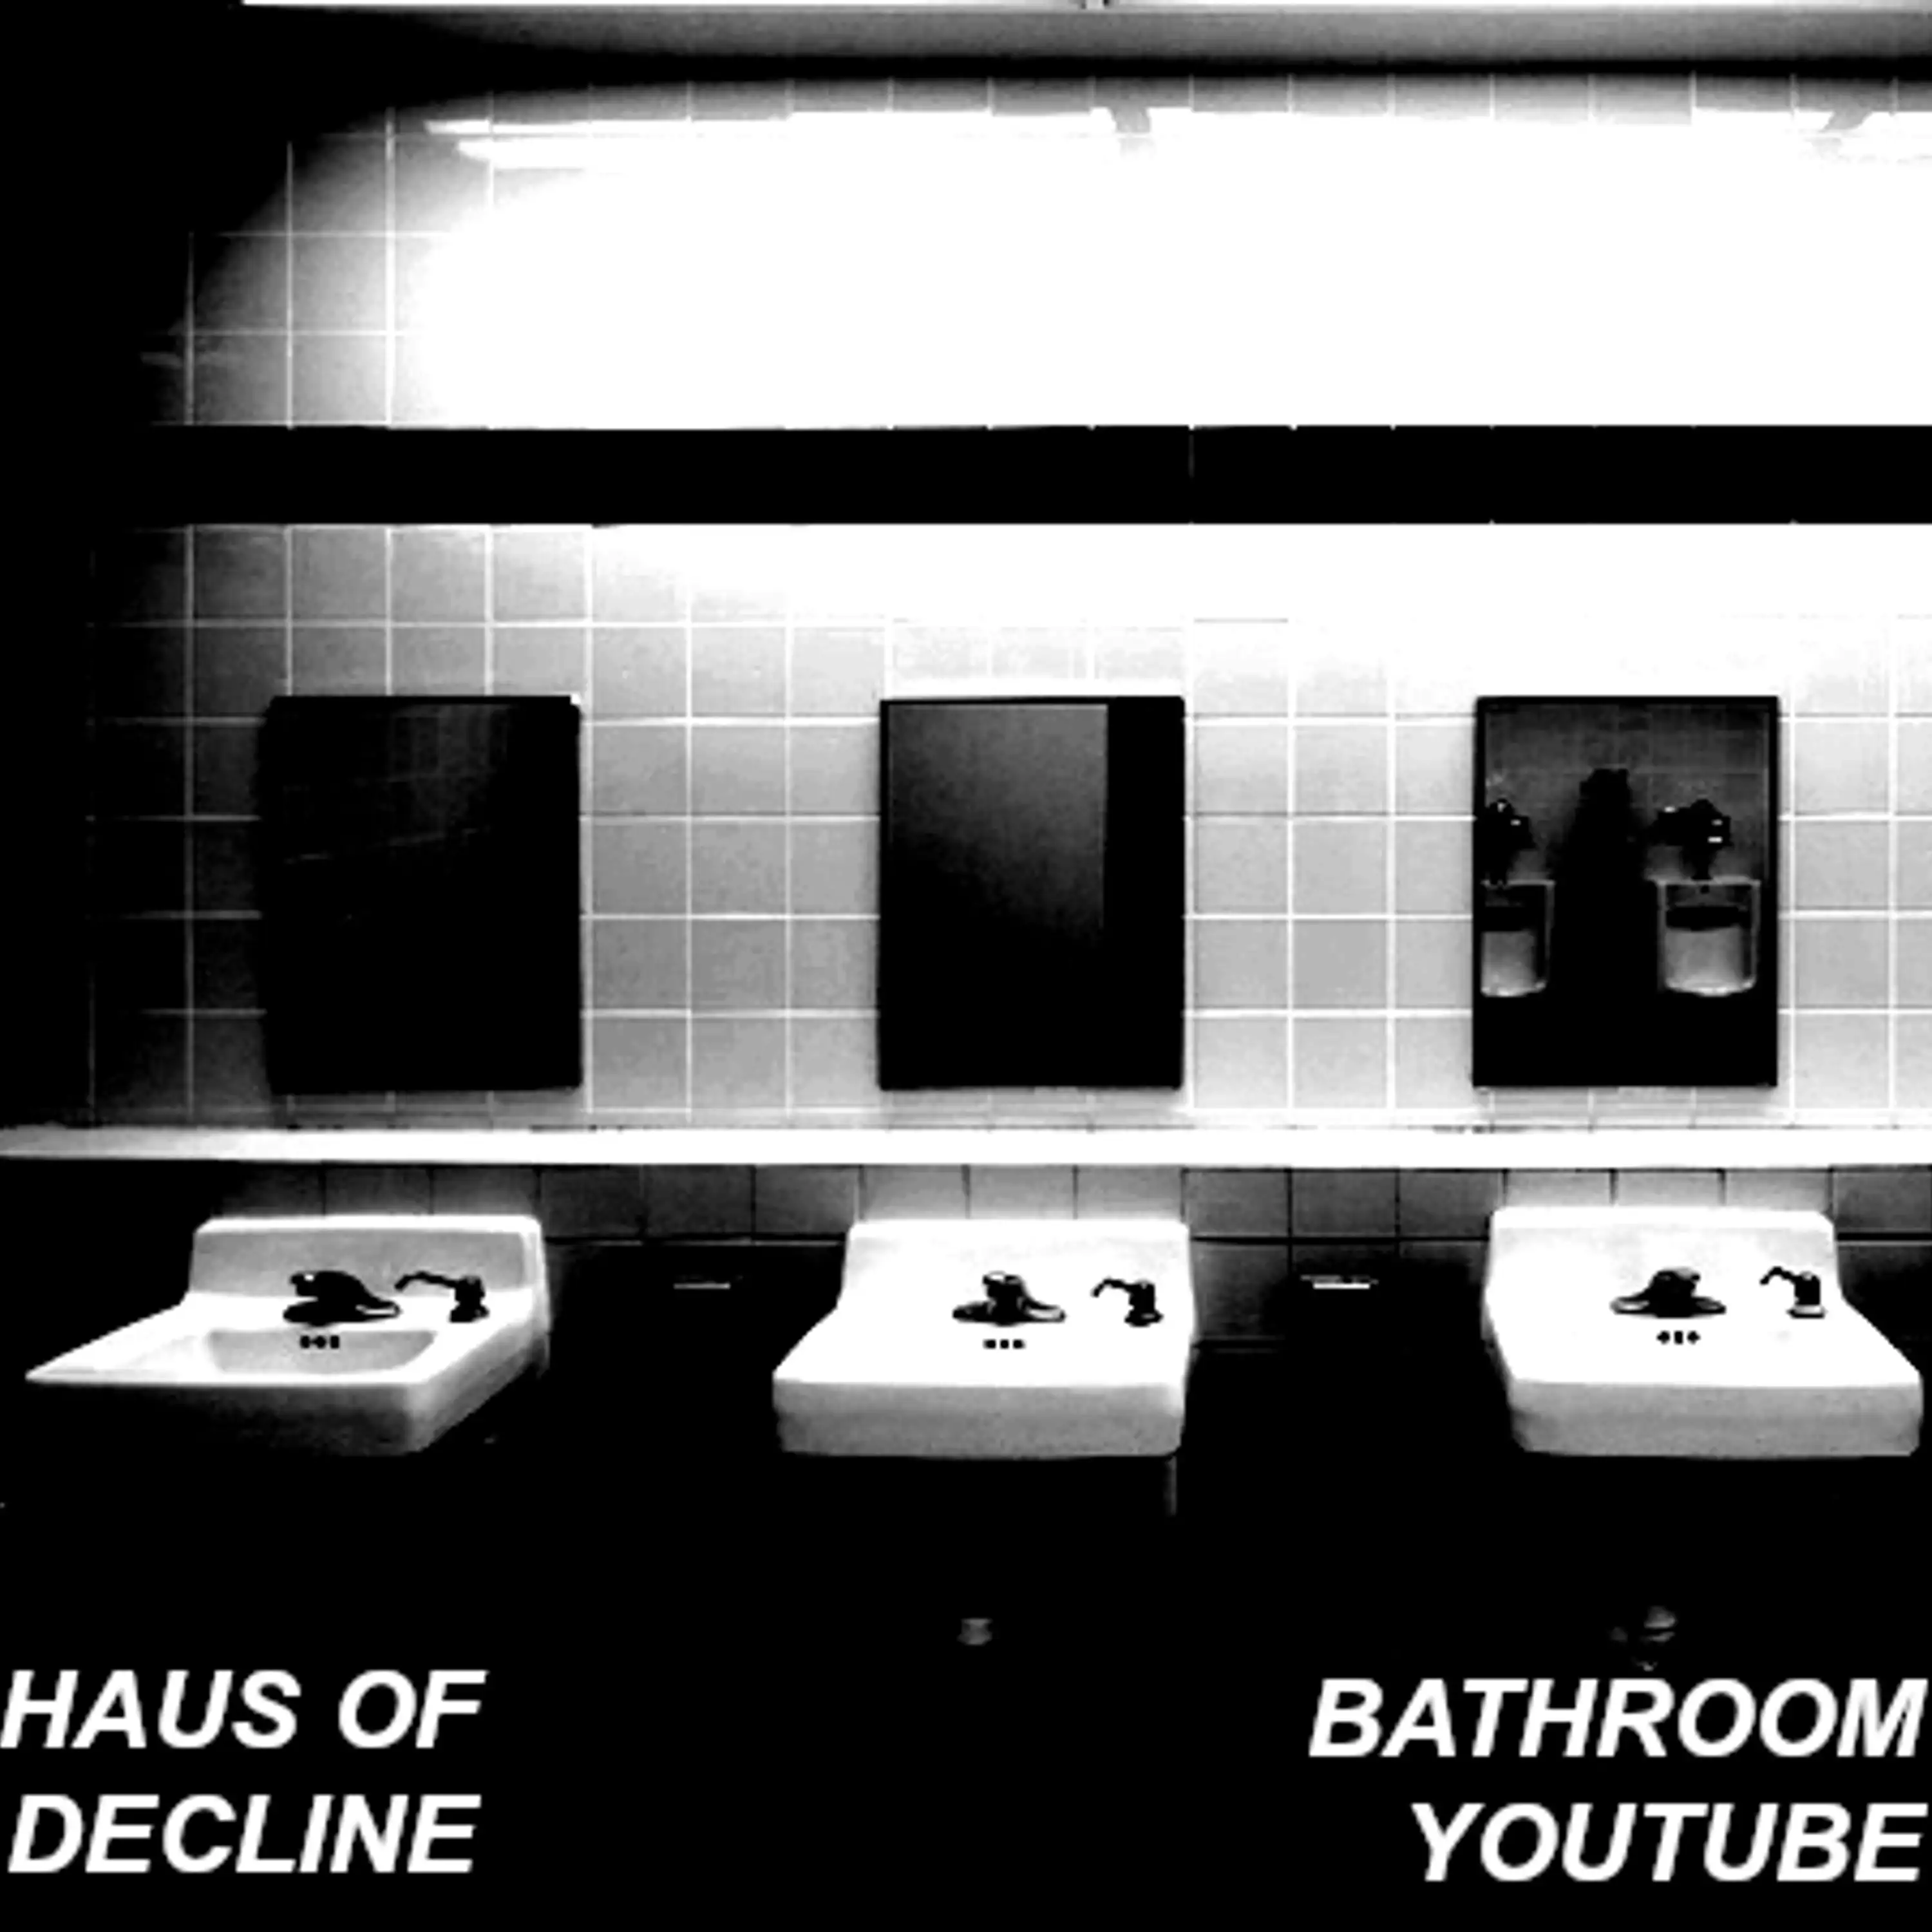 Bathroom YouTube